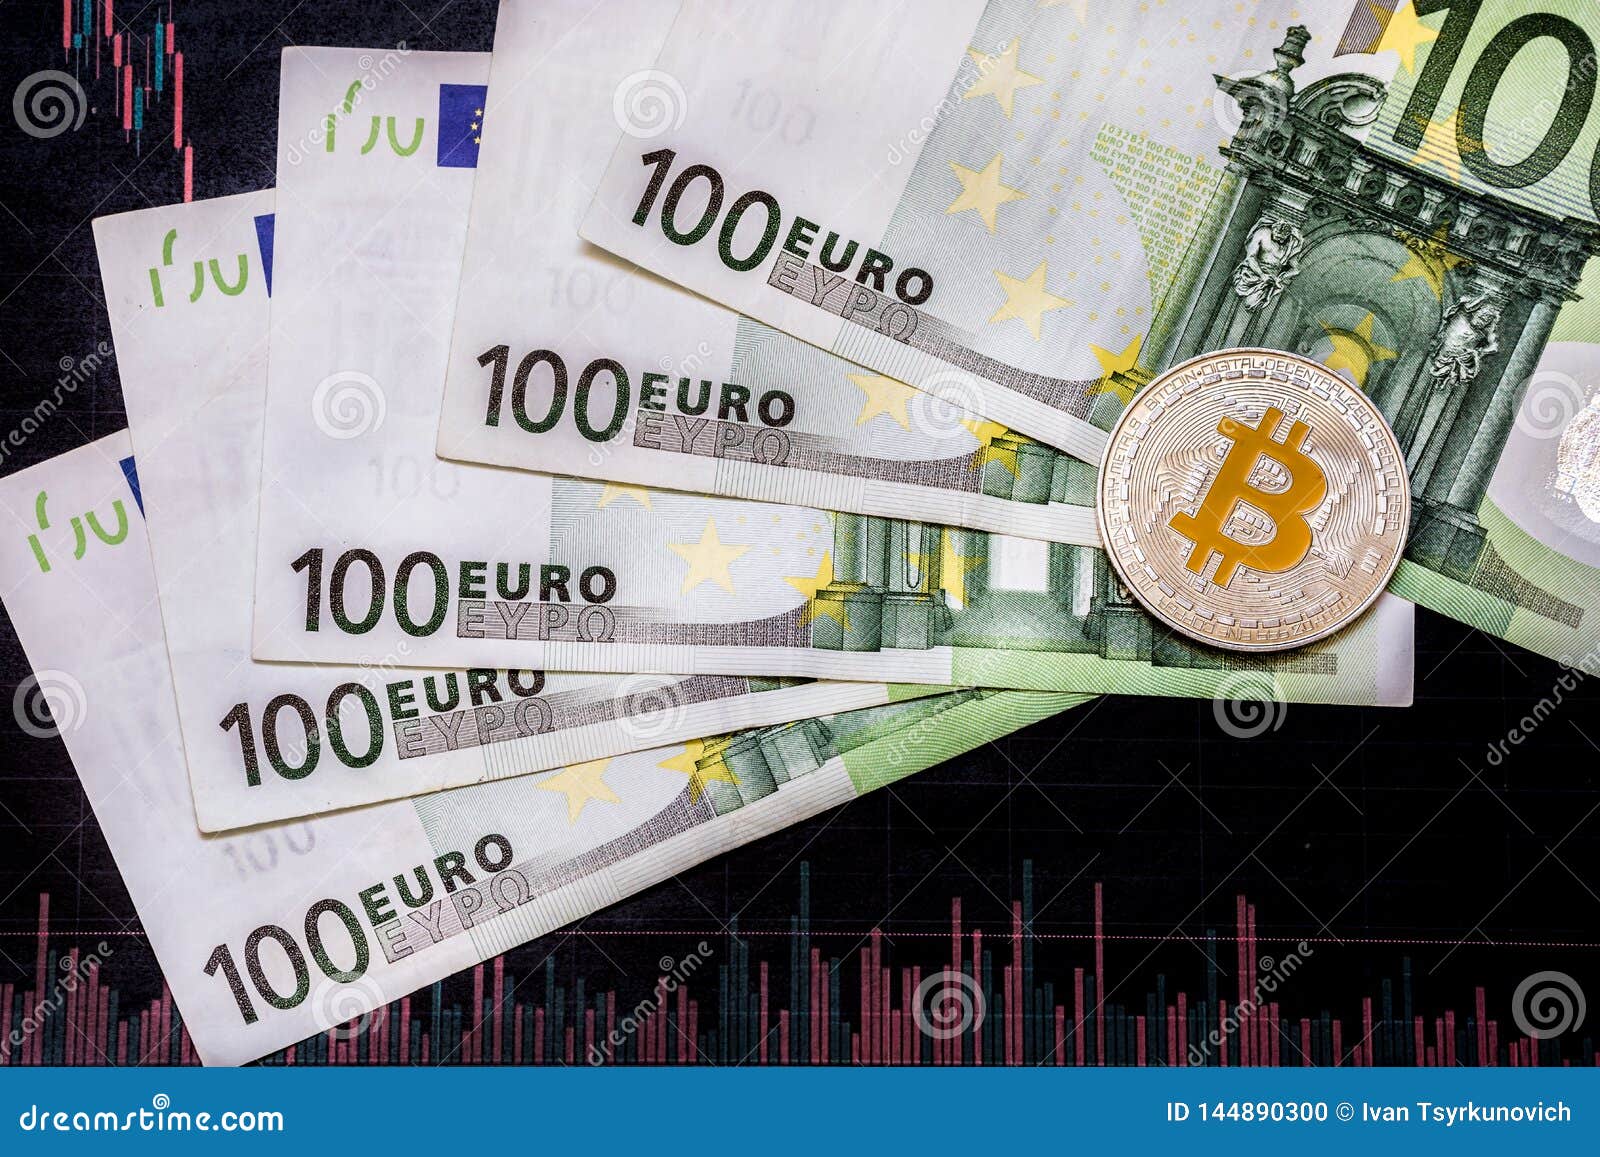 etro bitcoin cash